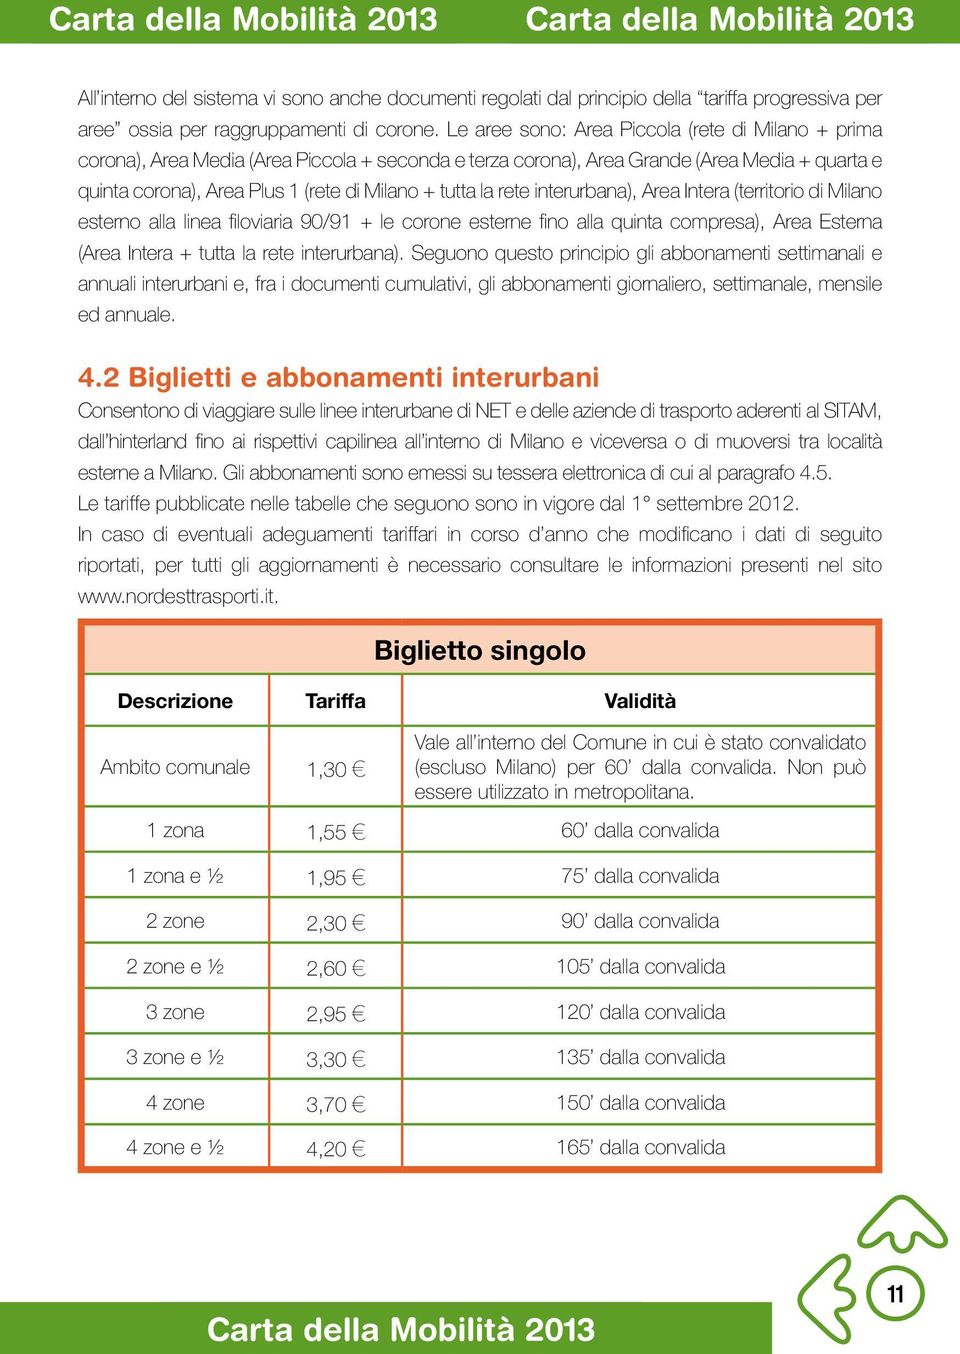 la rete interurbana), Area Intera (territorio di Milano esterno alla linea filoviaria 90/91 + le corone esterne fino alla quinta compresa), Area Esterna (Area Intera + tutta la rete interurbana).